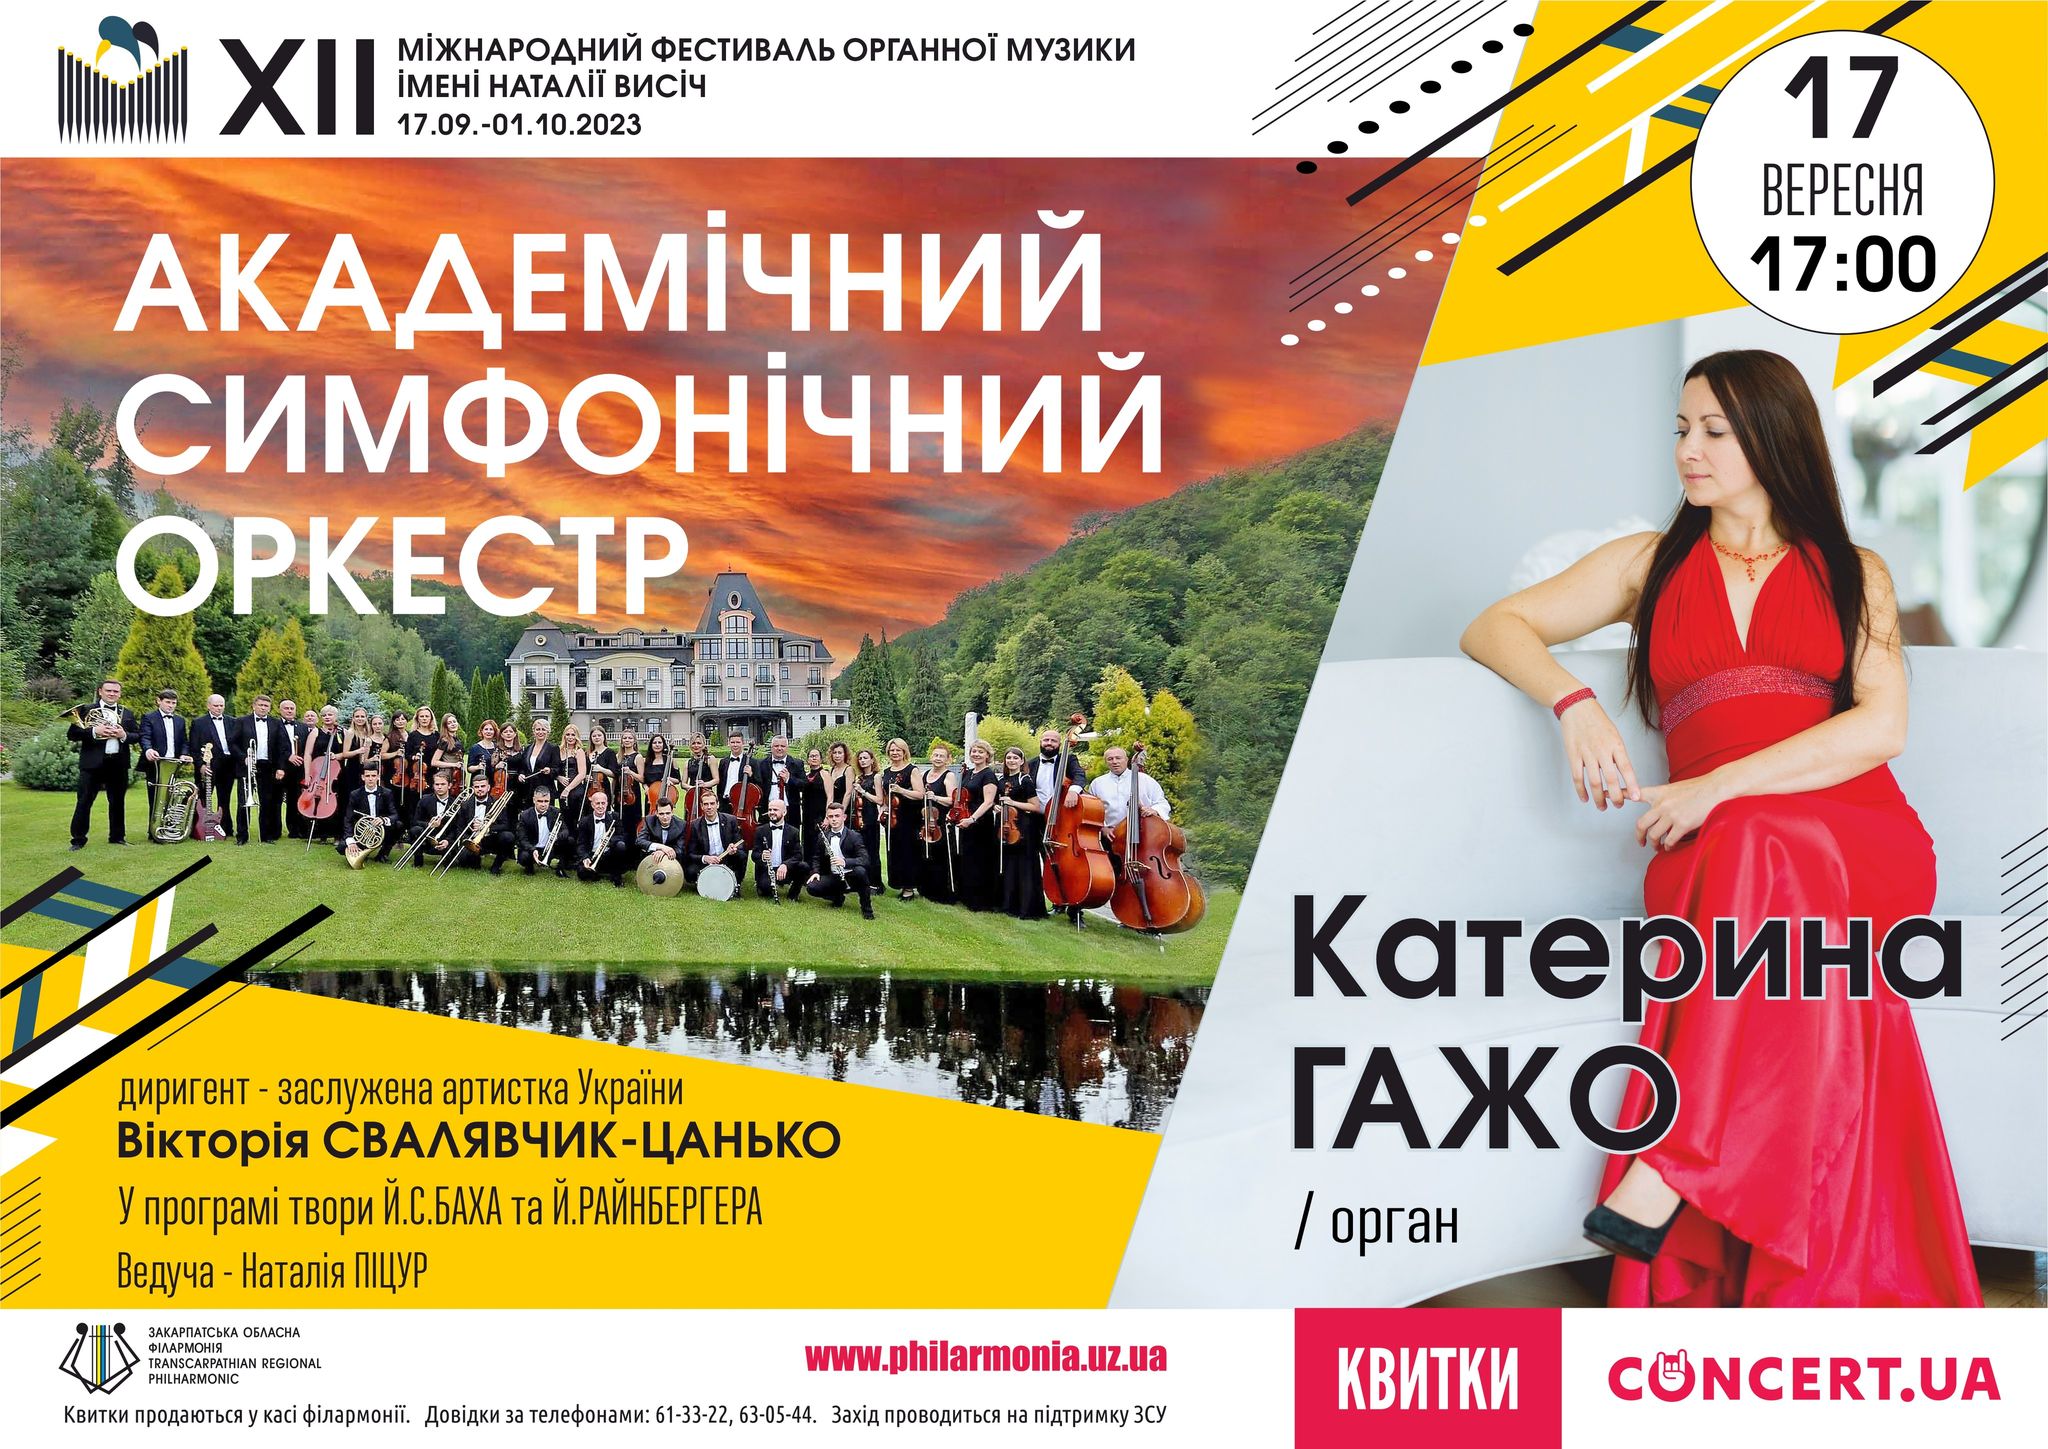 В Ужгороді цієї неділі стартує Міжнародний фестиваль органної музики ім. Наталії Висич